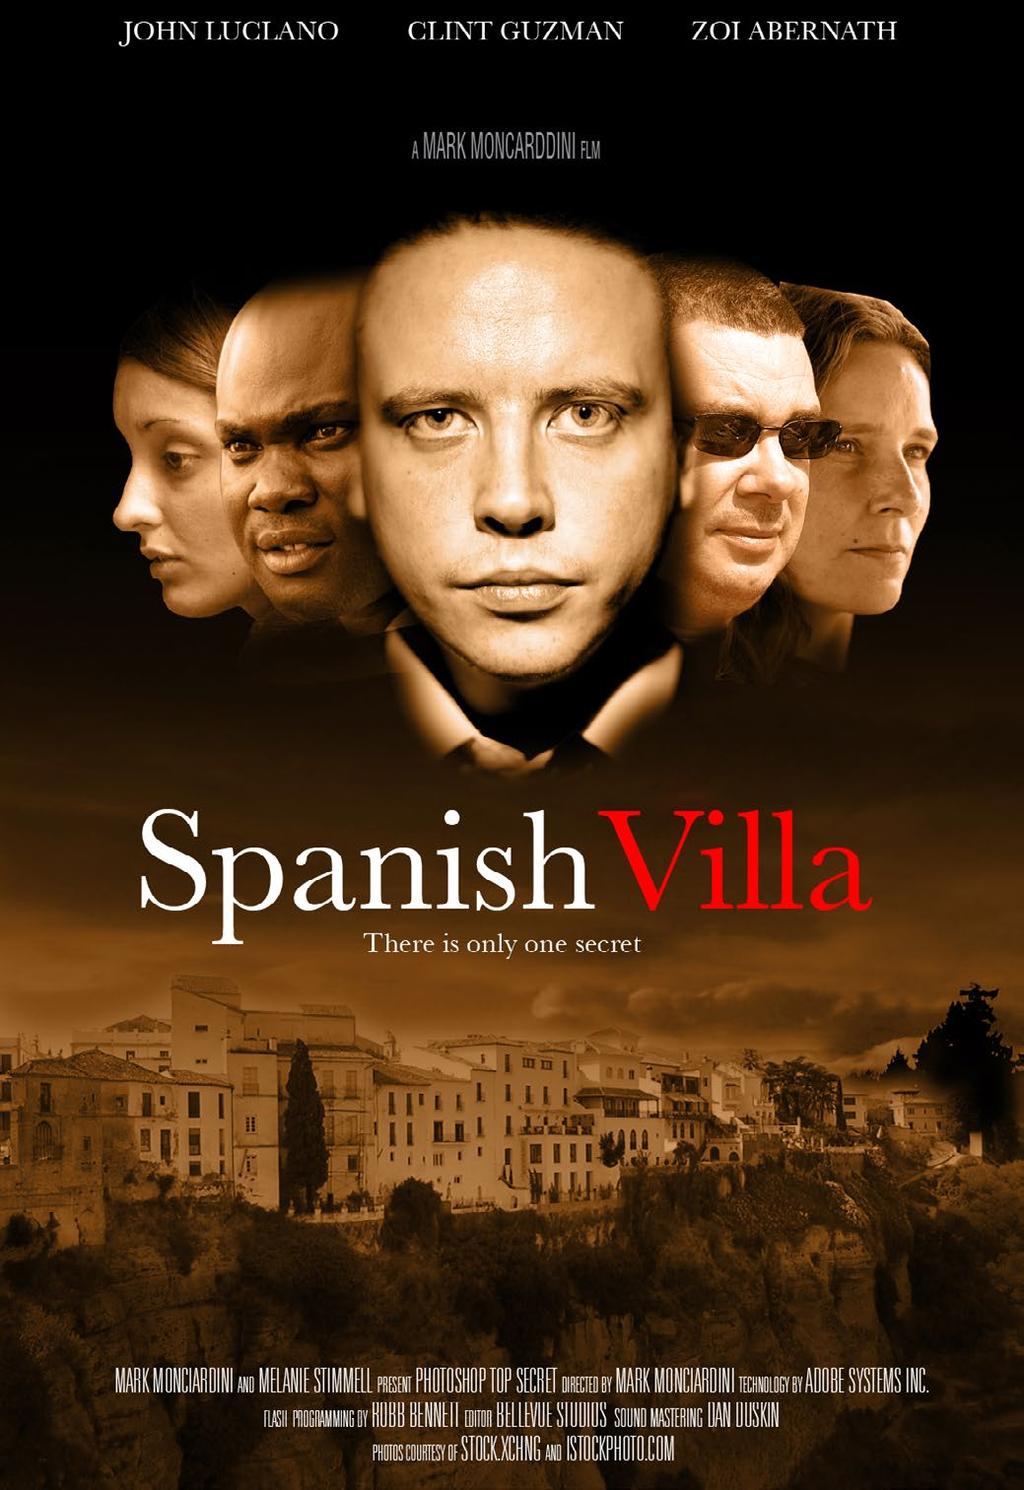 Spanish Villa isimli film için yaptığım konsept